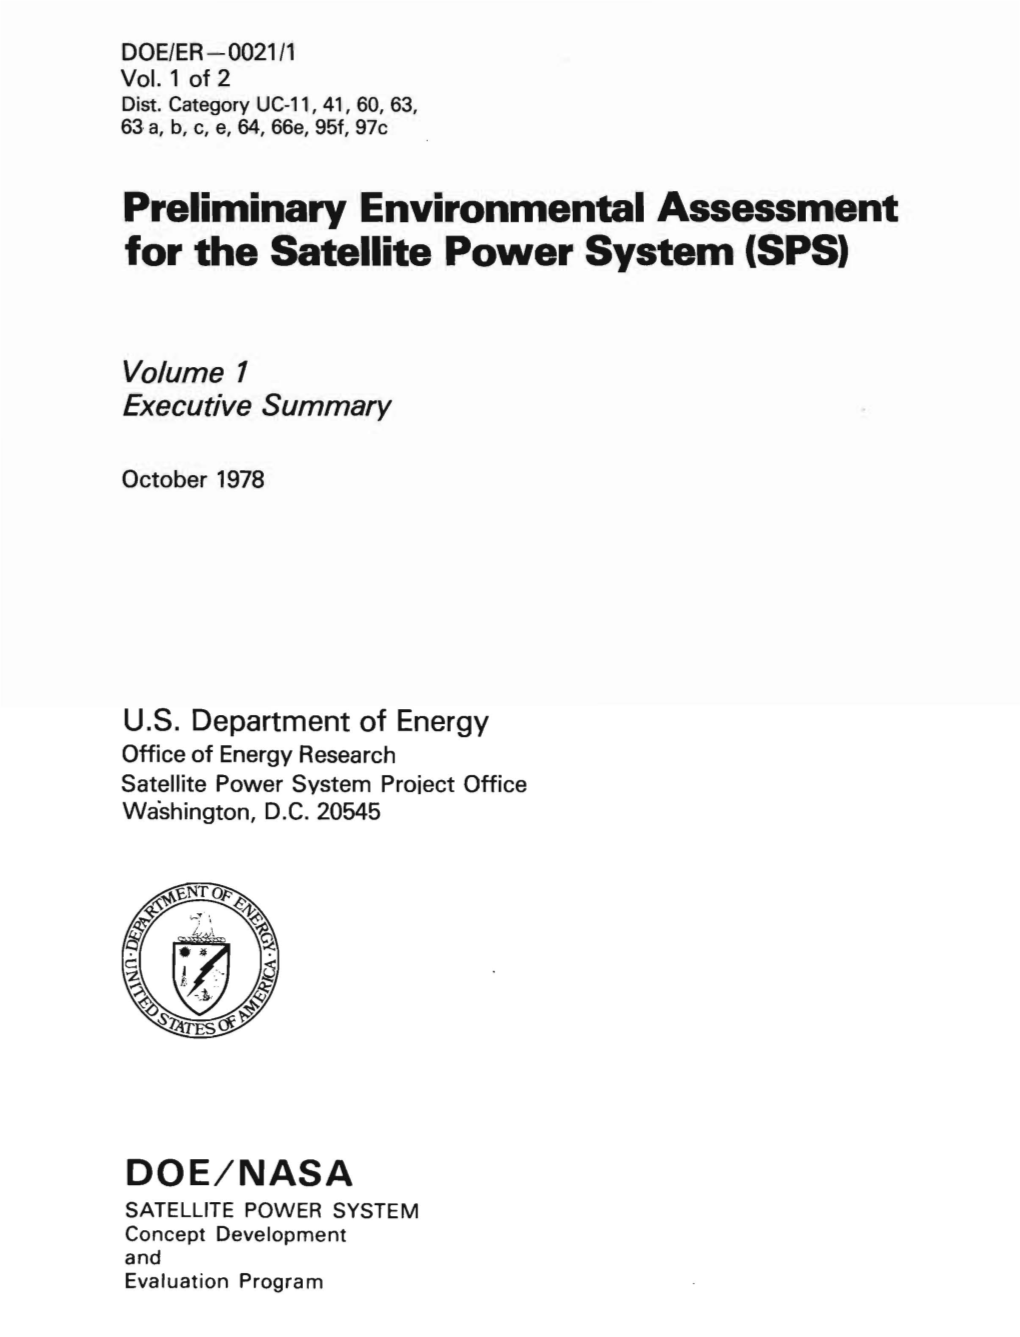 Preliminary Environmental Assessment for the Satellite Power System (SPS)